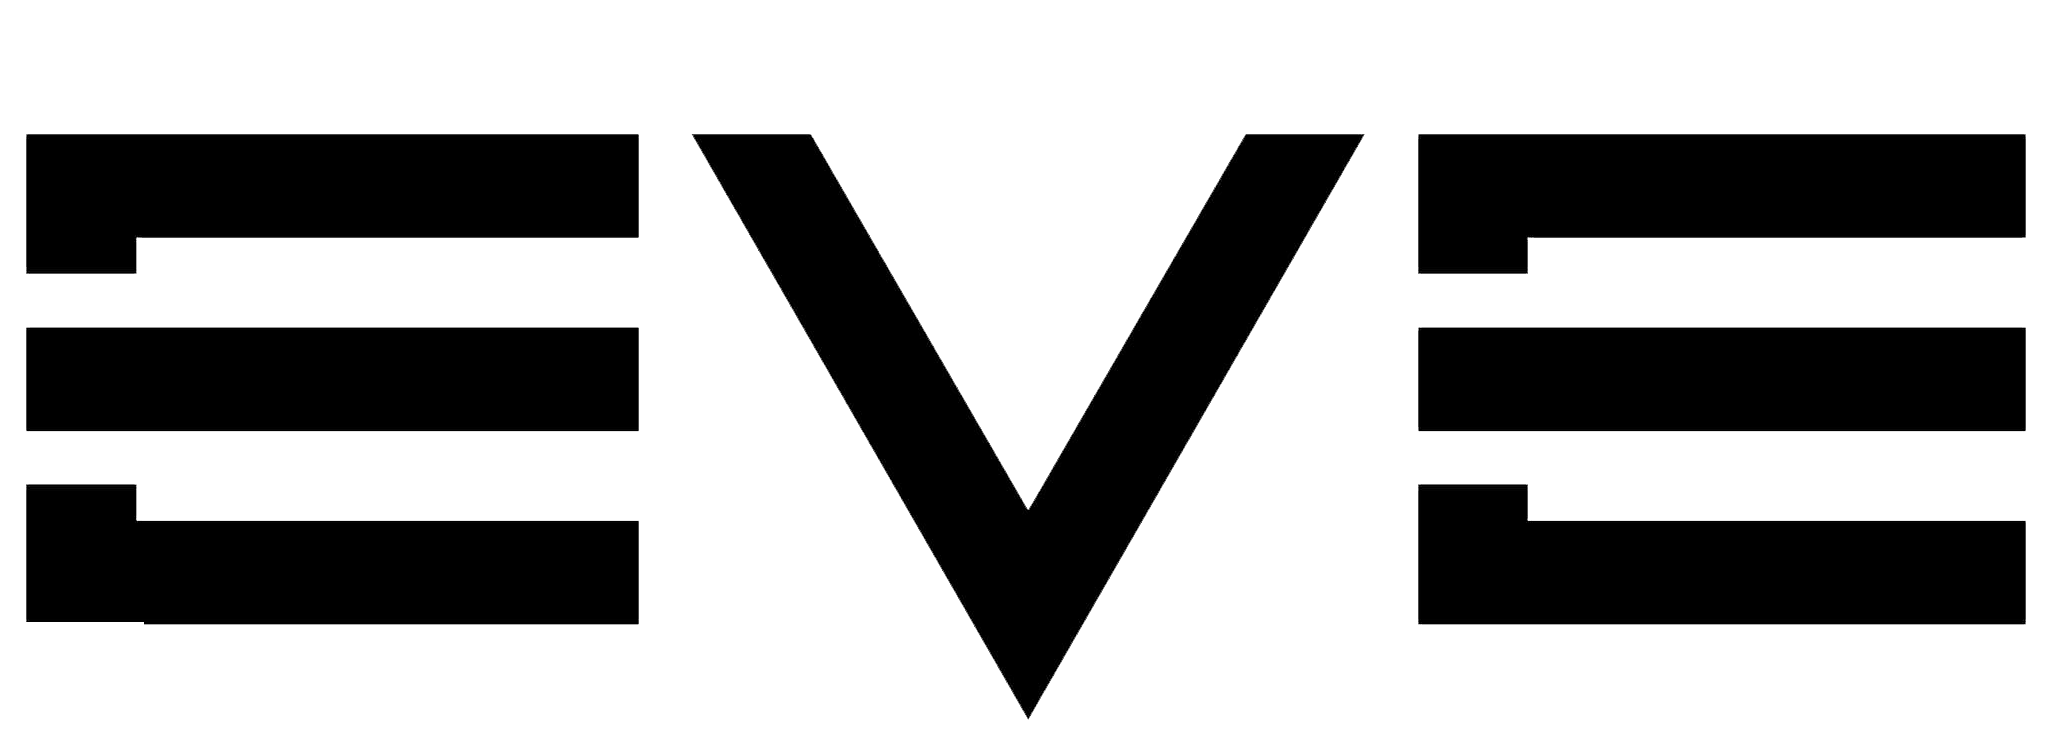 EVE Echoes Logo